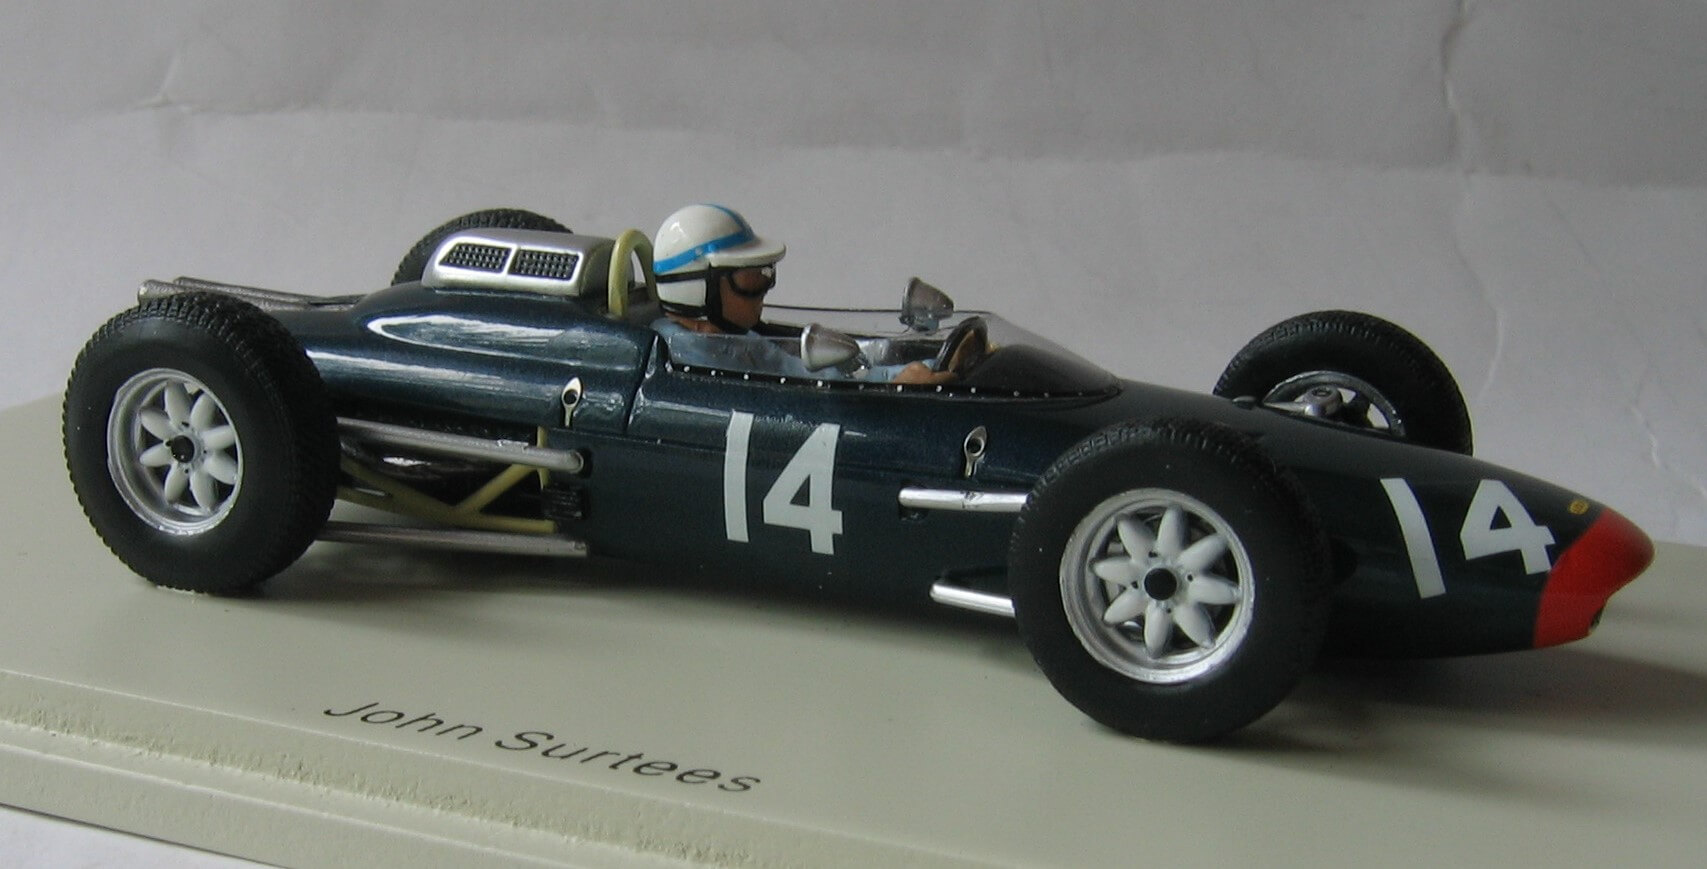 Lola Mk4 1962